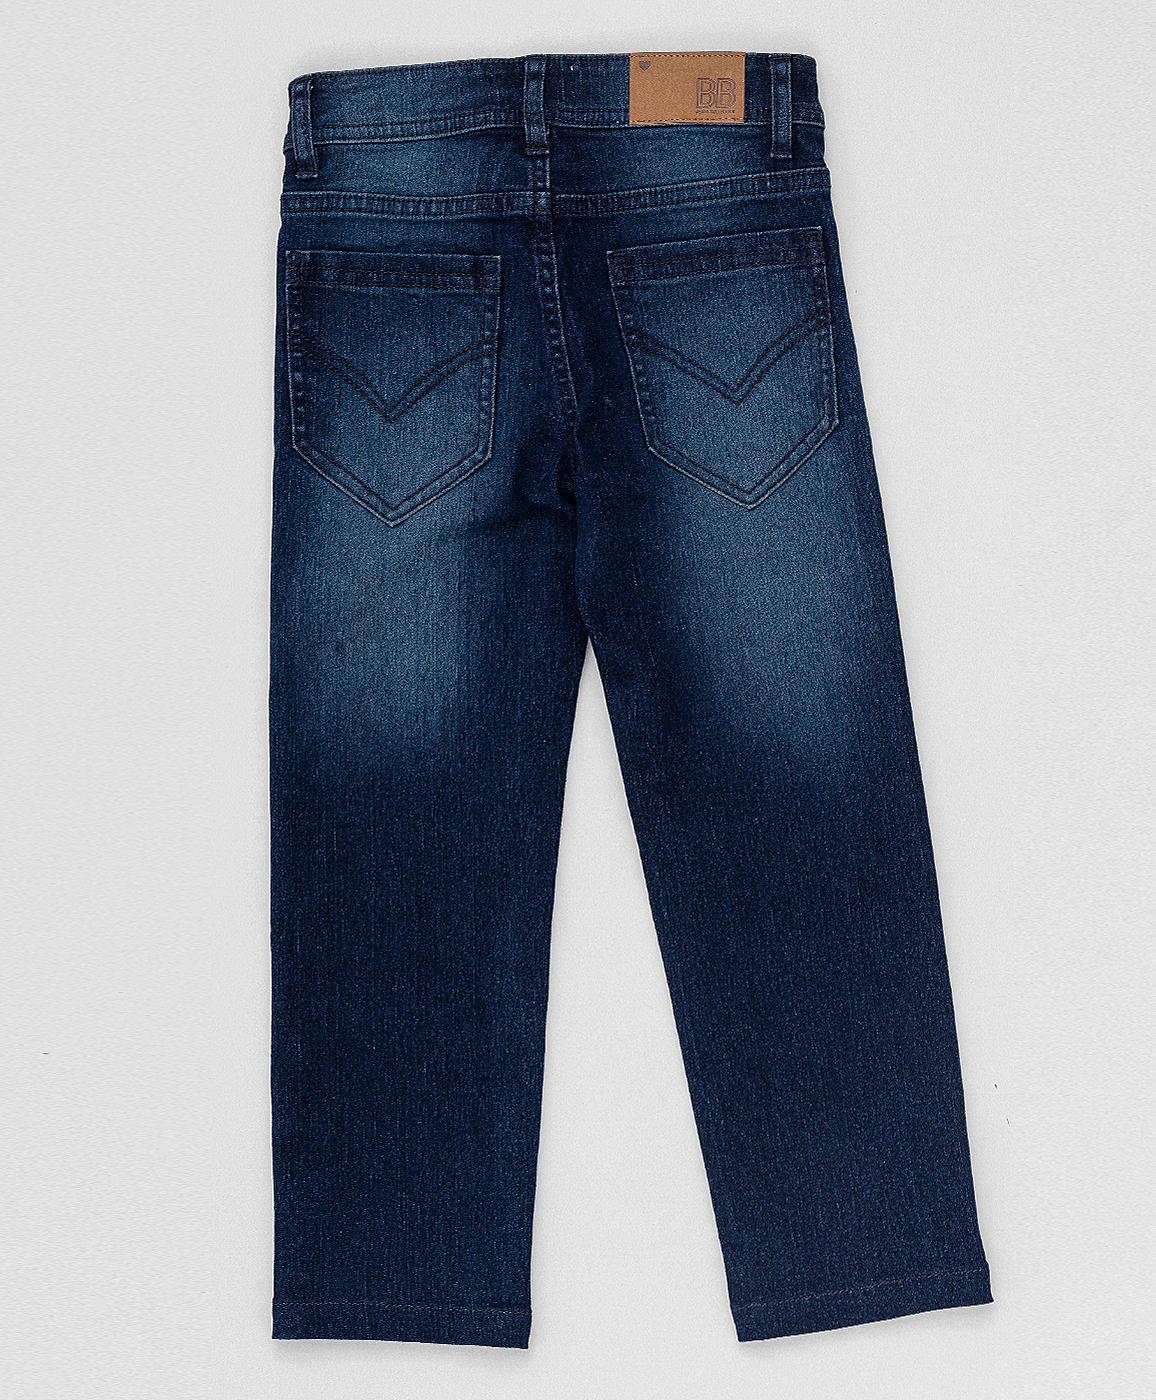 Синие прямые джинсы Button Blue 220BBGJC6302D500, размер 146, цвет синий regular fit / прямые - фото 2